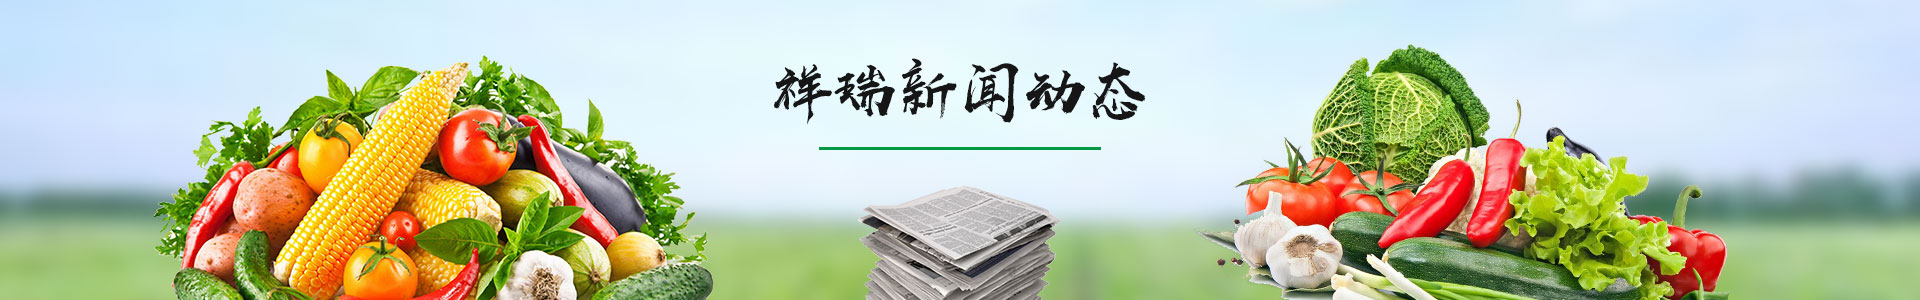 新闻资讯banner_新闻资讯banner_深圳市祥瑞餐饮管理有限公司